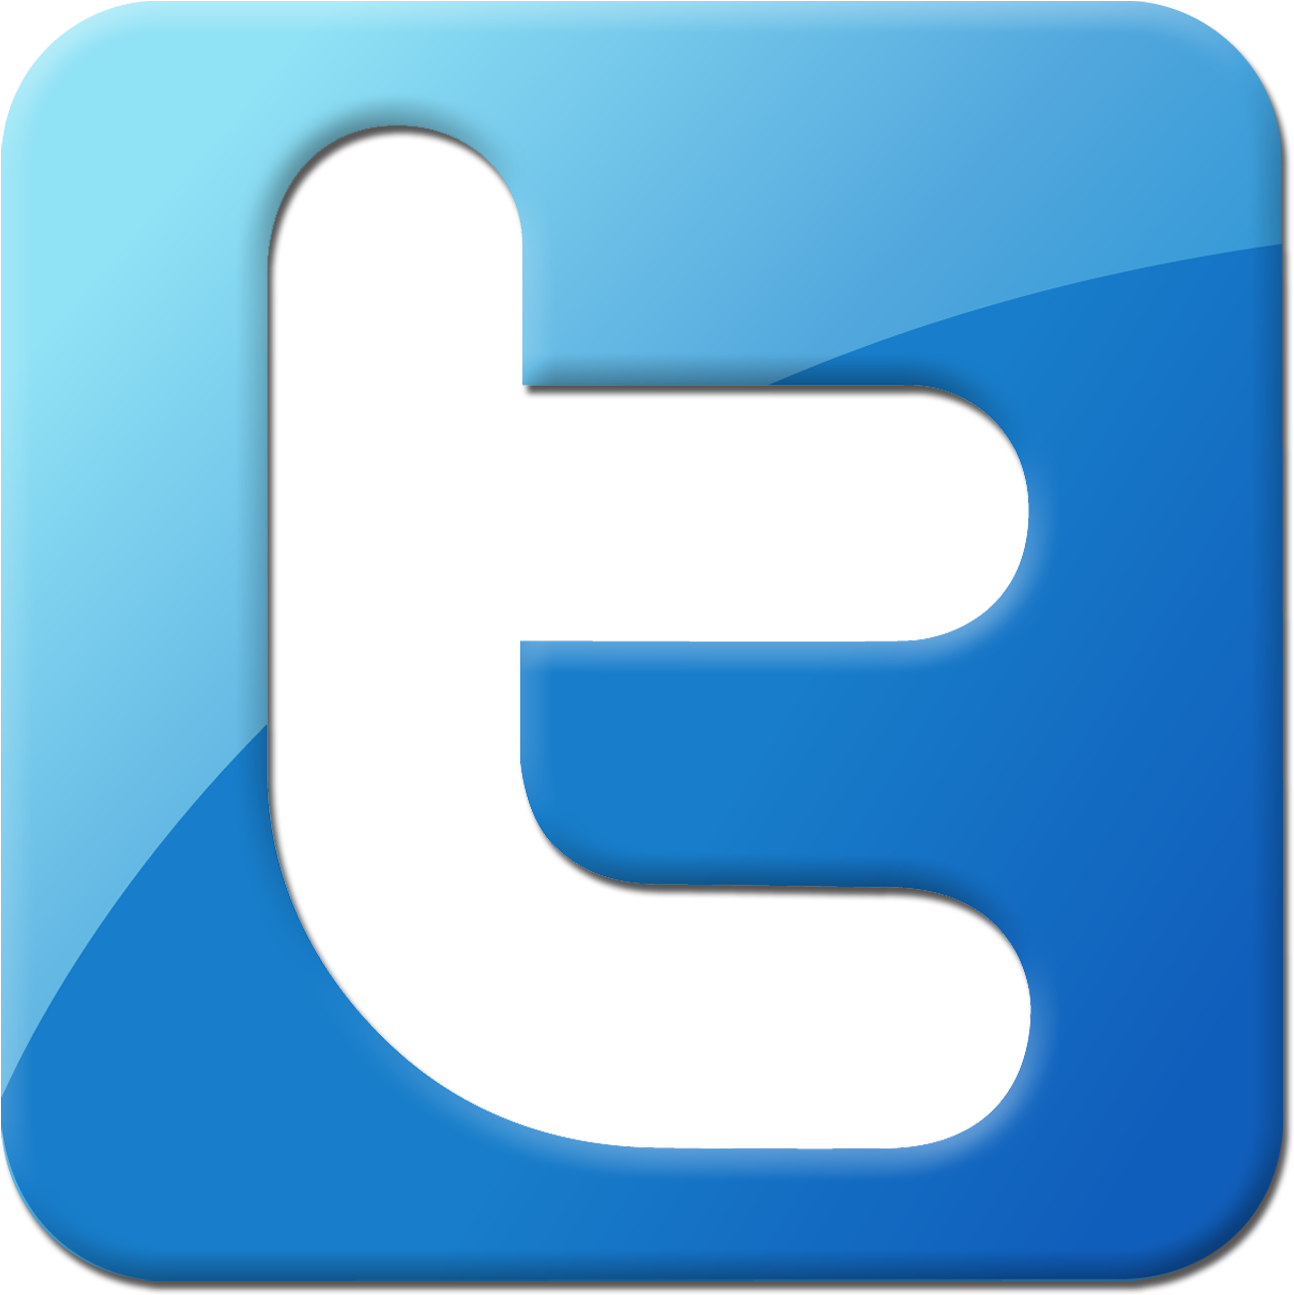 Download Twitter Logo Png Transparent Background Twitter Transparent Twitter Logo Png Transparent Background Png Image With No Background Pngkey Com